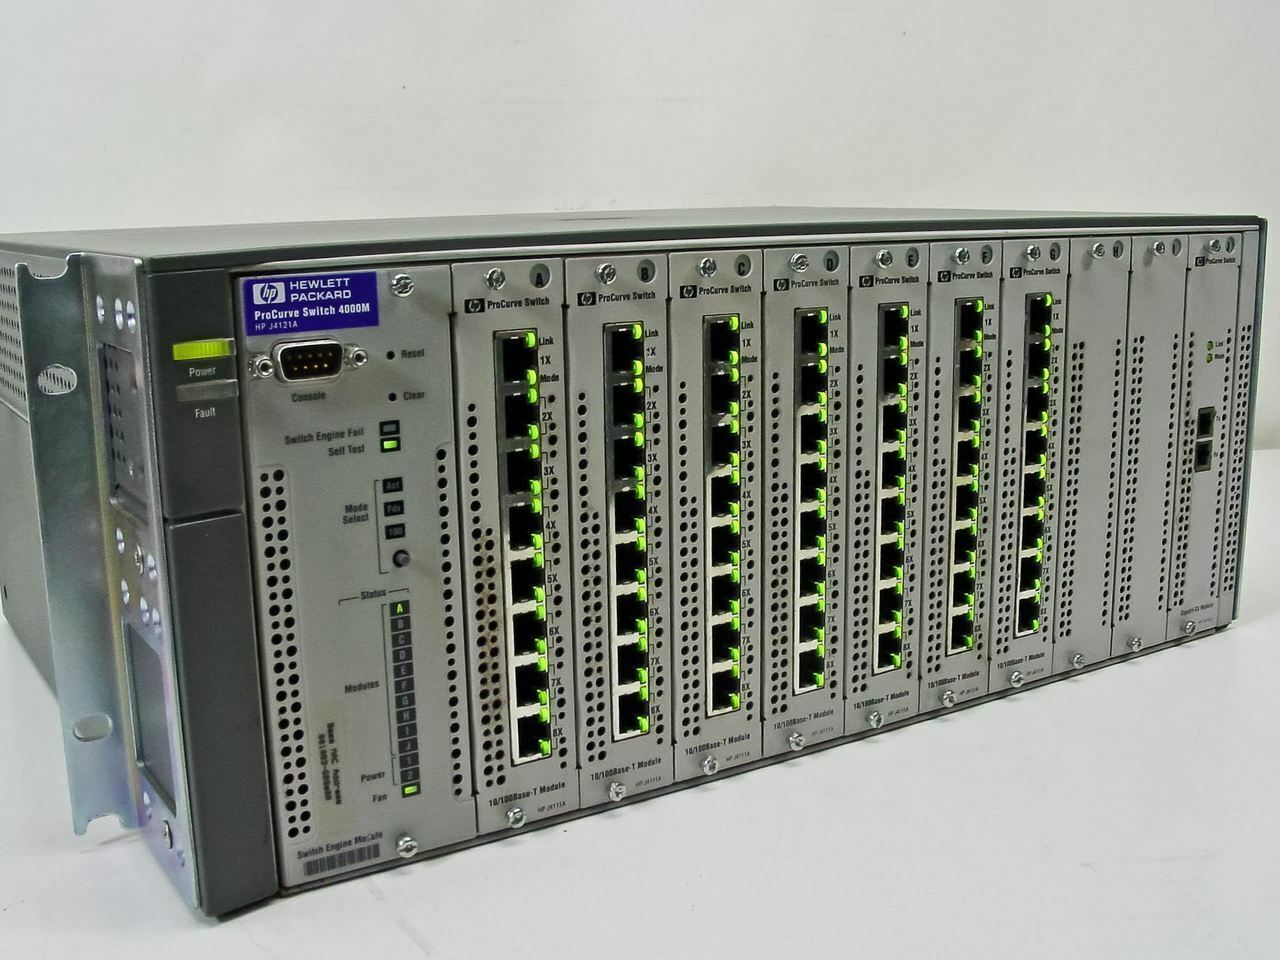 HP J4121A ProCurve Switch 4000m 10/100/1000 with 7x J4111A & 1x J4113A Modules